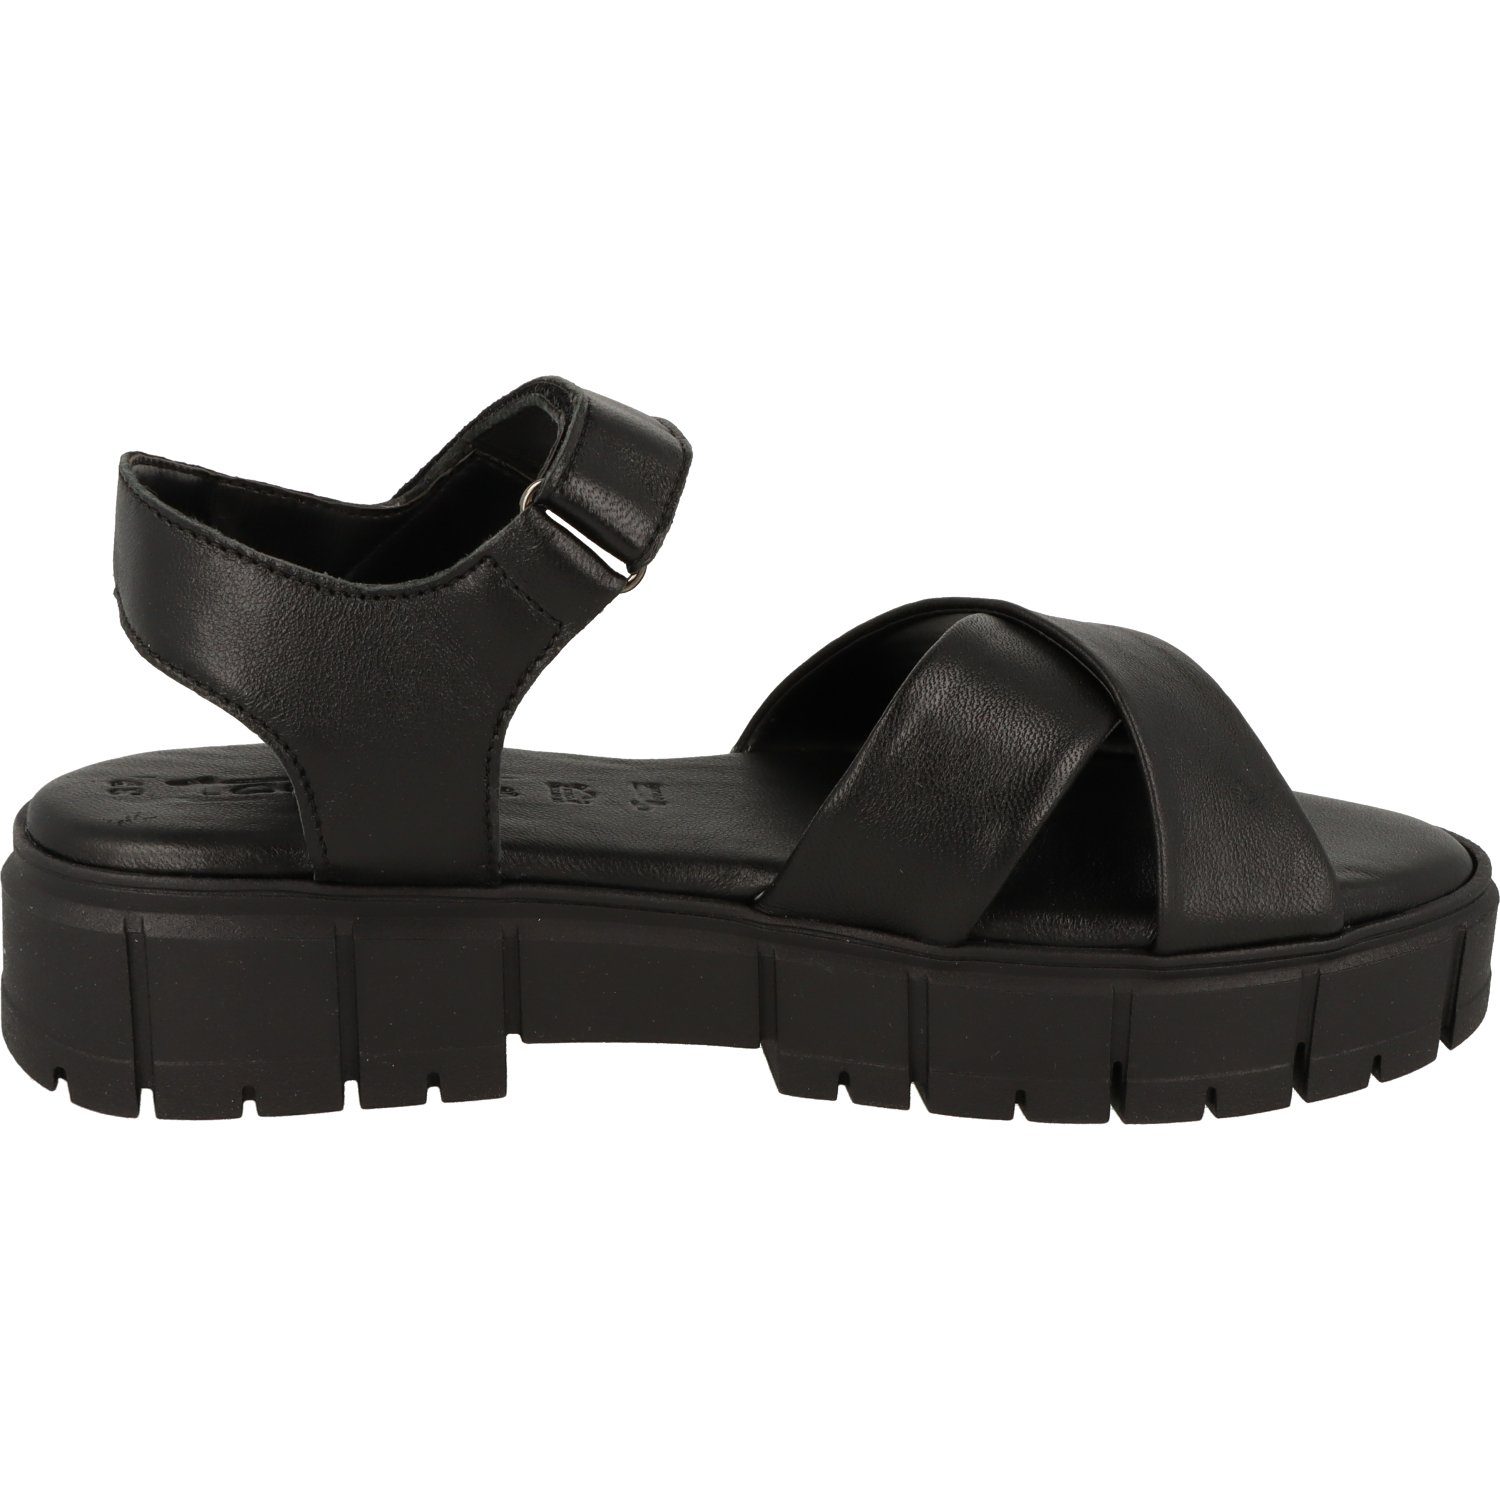 Schuhe Tamaris Leder Black Plateausandale Leather Klett Komfort Damen 1-28242-20 Sandalette